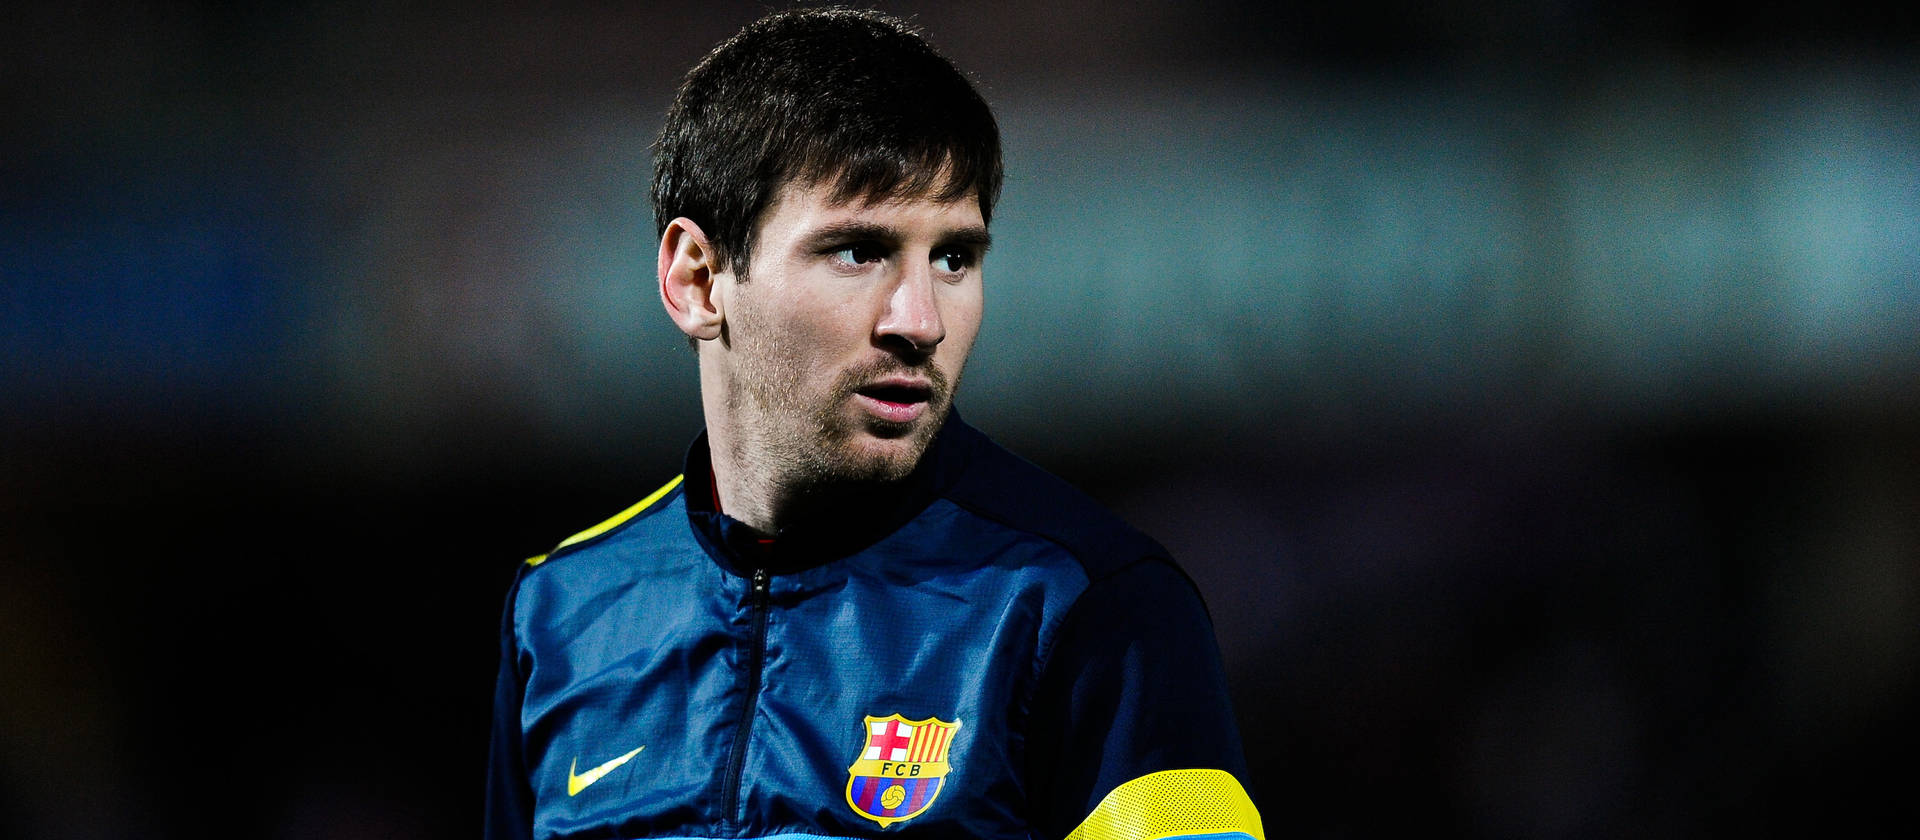 Lionel Messi Mørkeblå jakke tapet Wallpaper